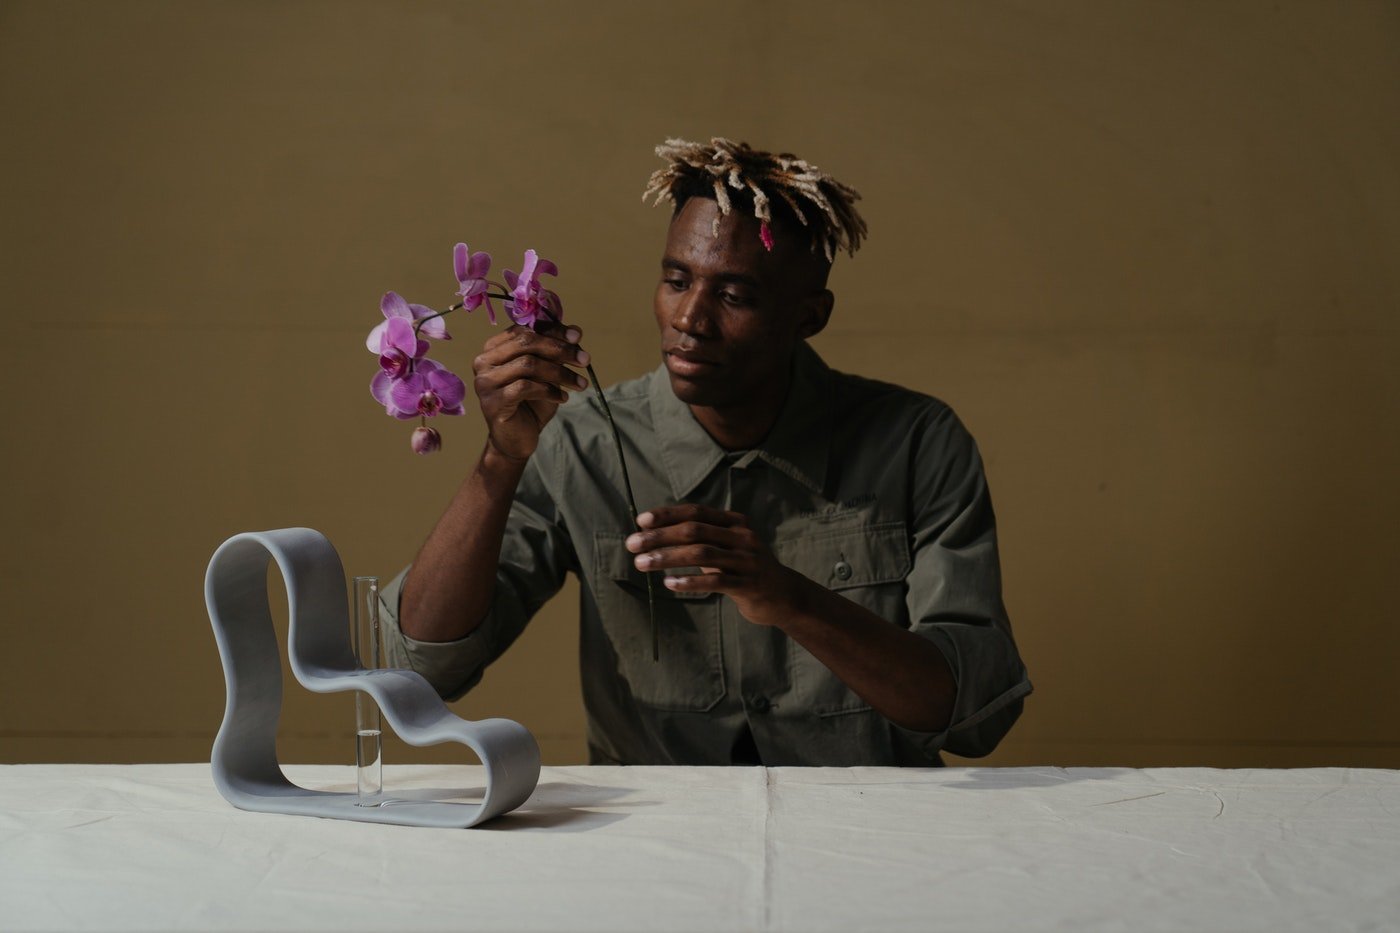 homme arrangeant une orchidée - comment rédiger un c.v./cv pour un emploi de fleuriste